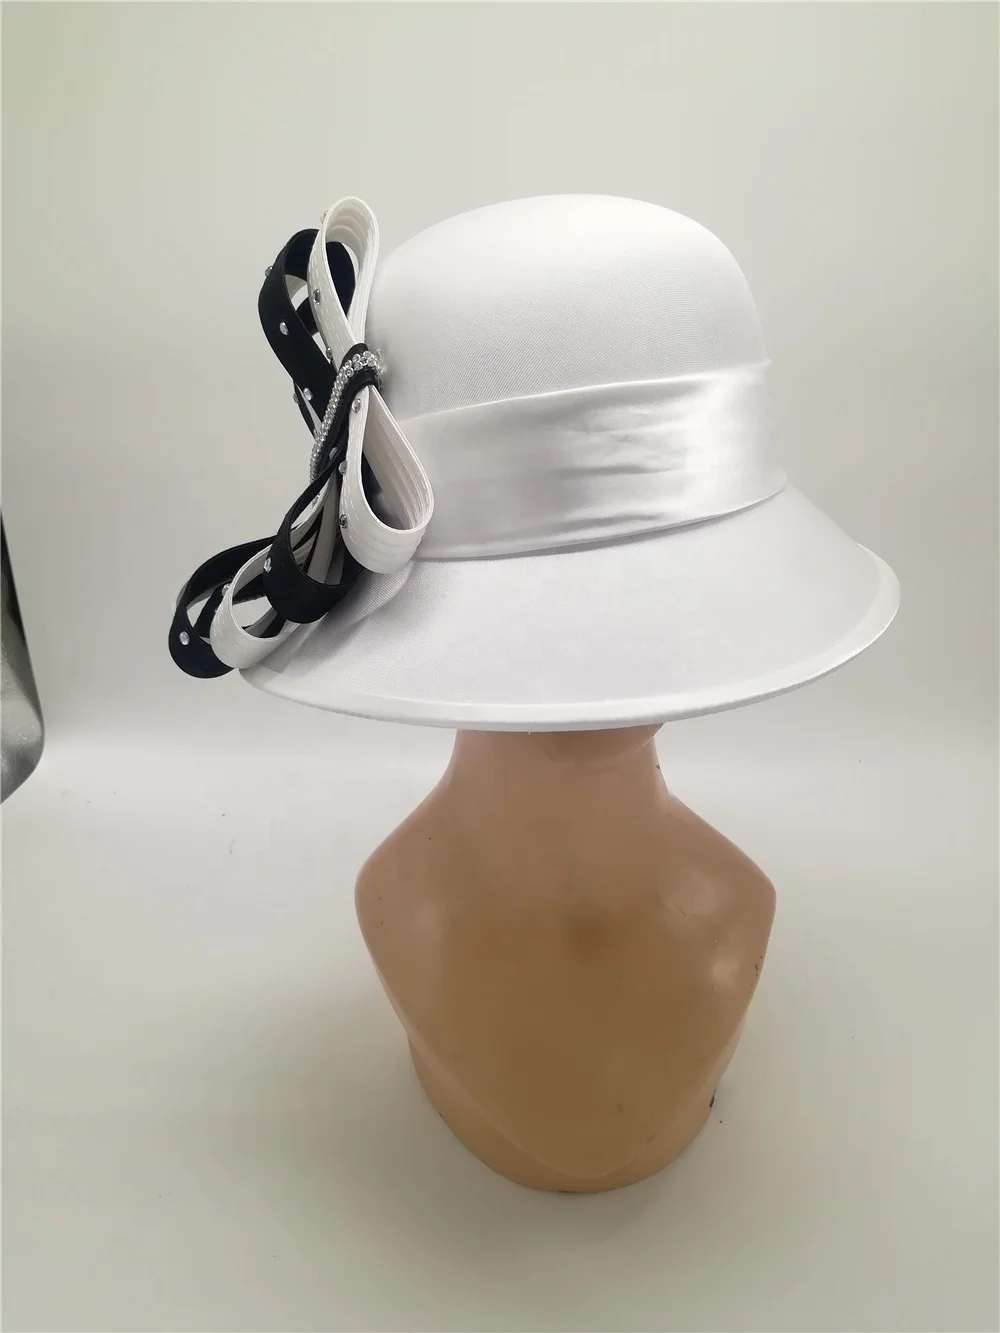 The Satin Felt case-hardened Royal Club Silk-stocking Fashion Wide Brim Formal Party  lady church new elegant women hats